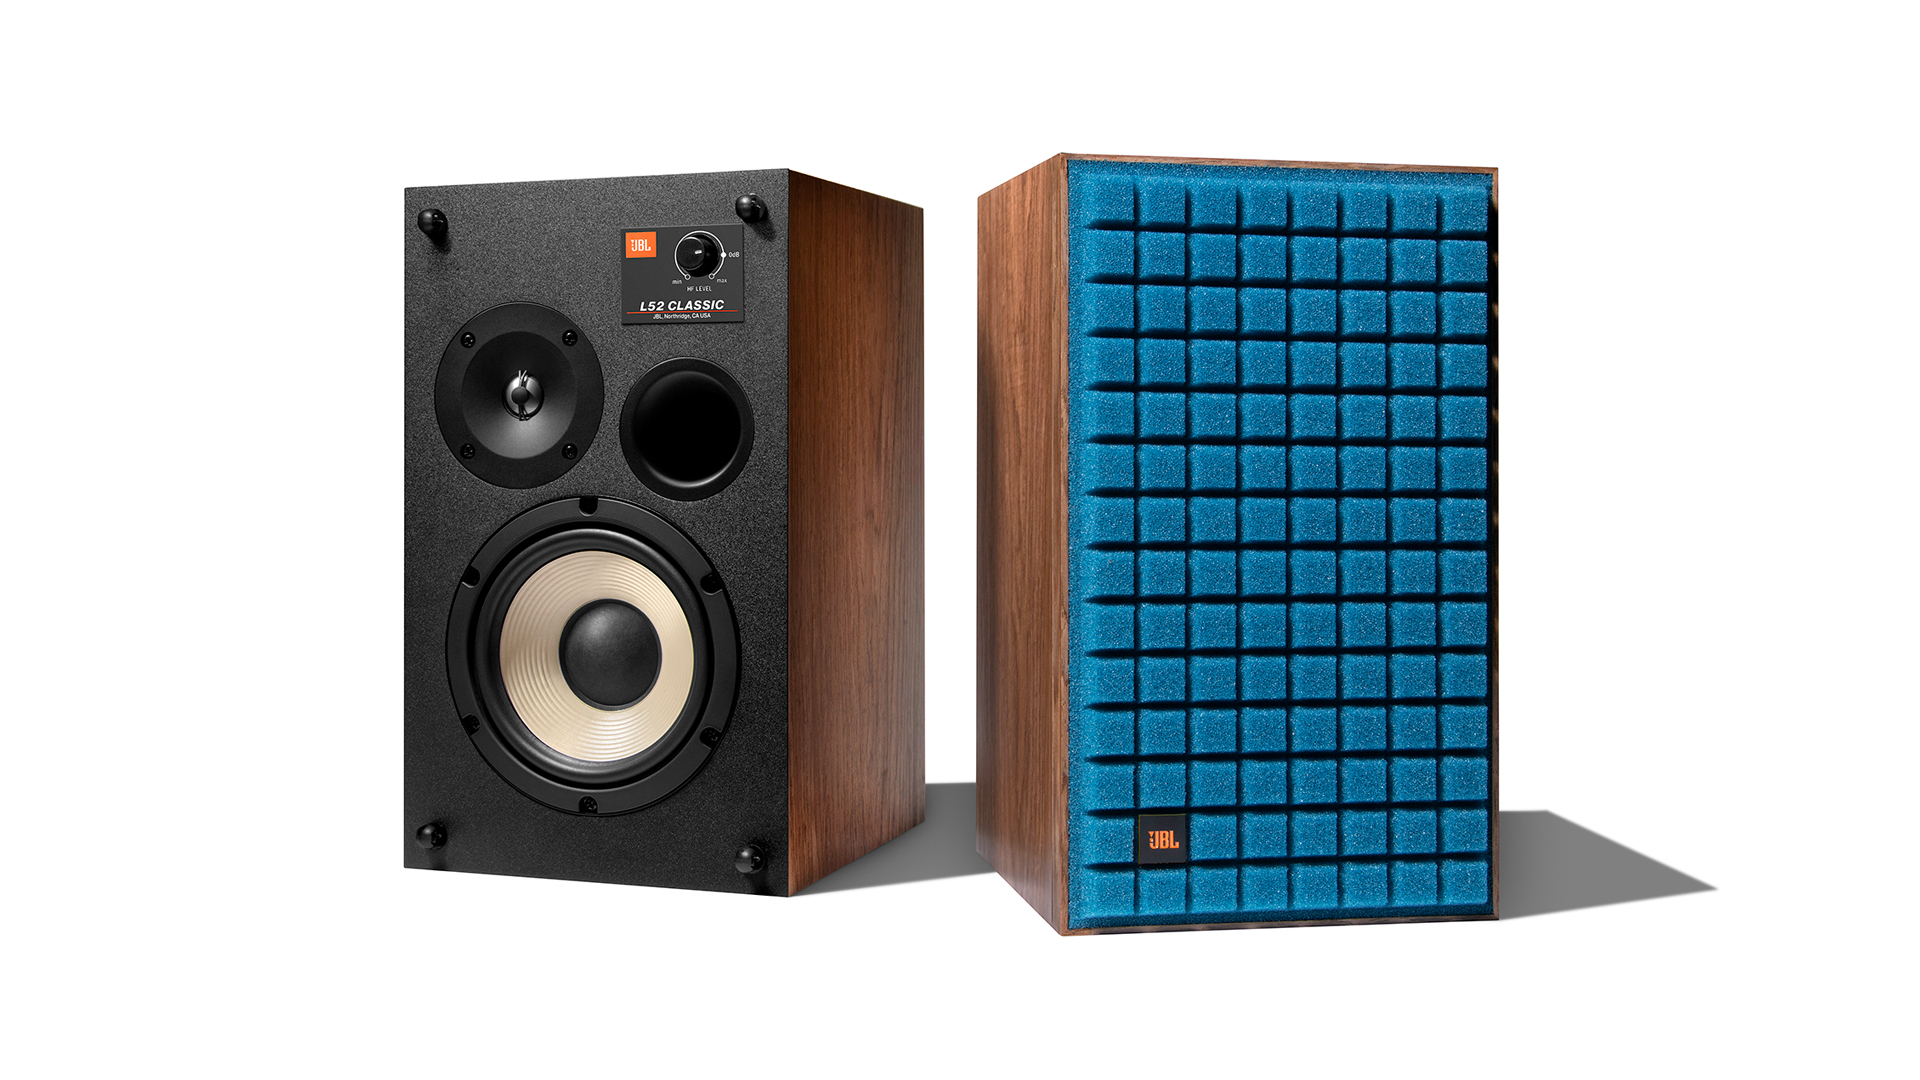 Standmount speakers: JBL L52 Classic